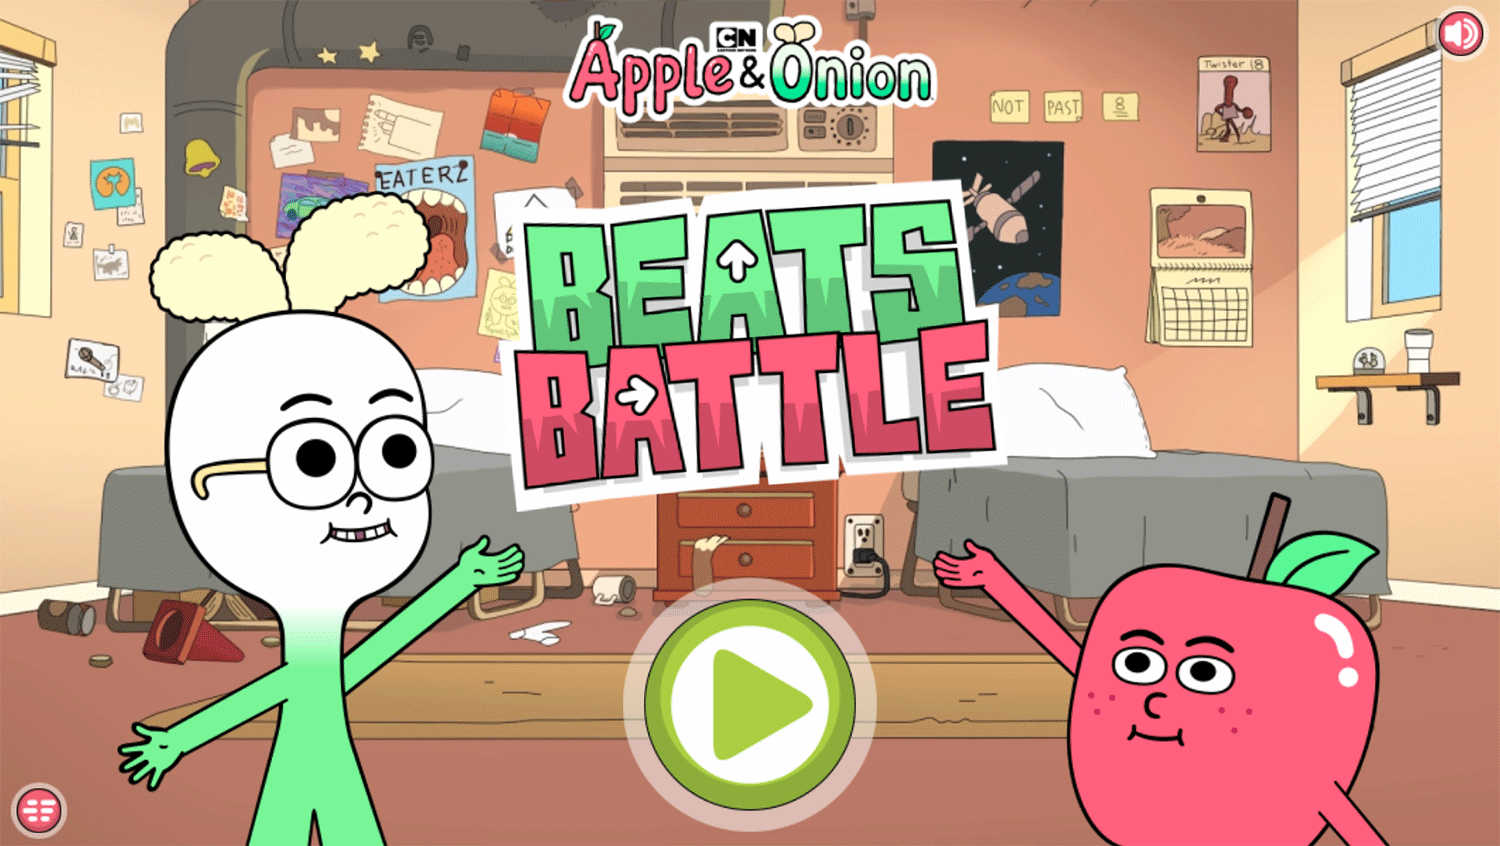 Apple & Onion Beats Battle Welcome Screen Screenshot.